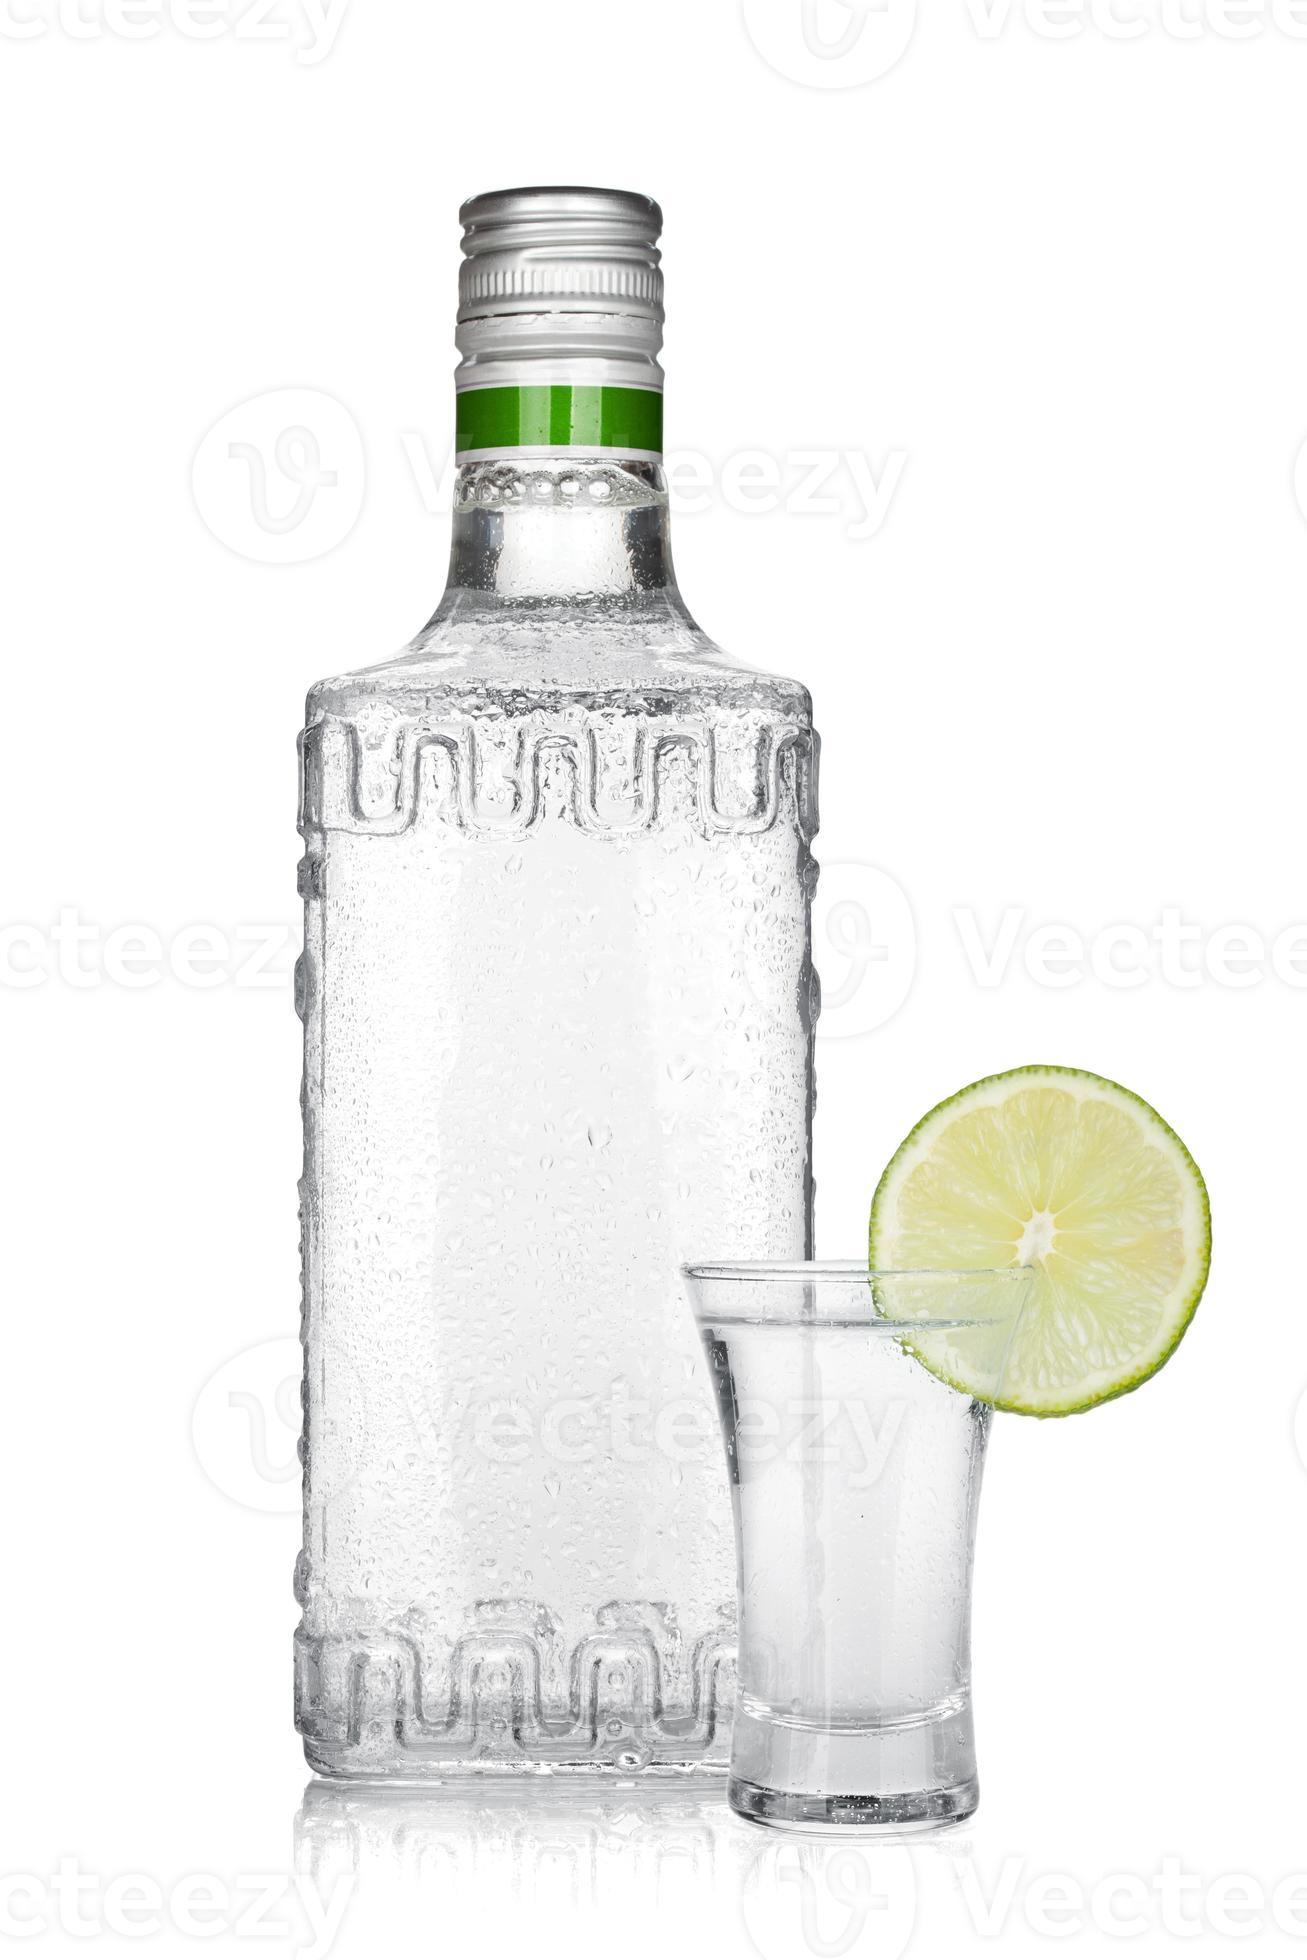 bouteille de tequila en argent et tourné avec une tranche de citron vert photo